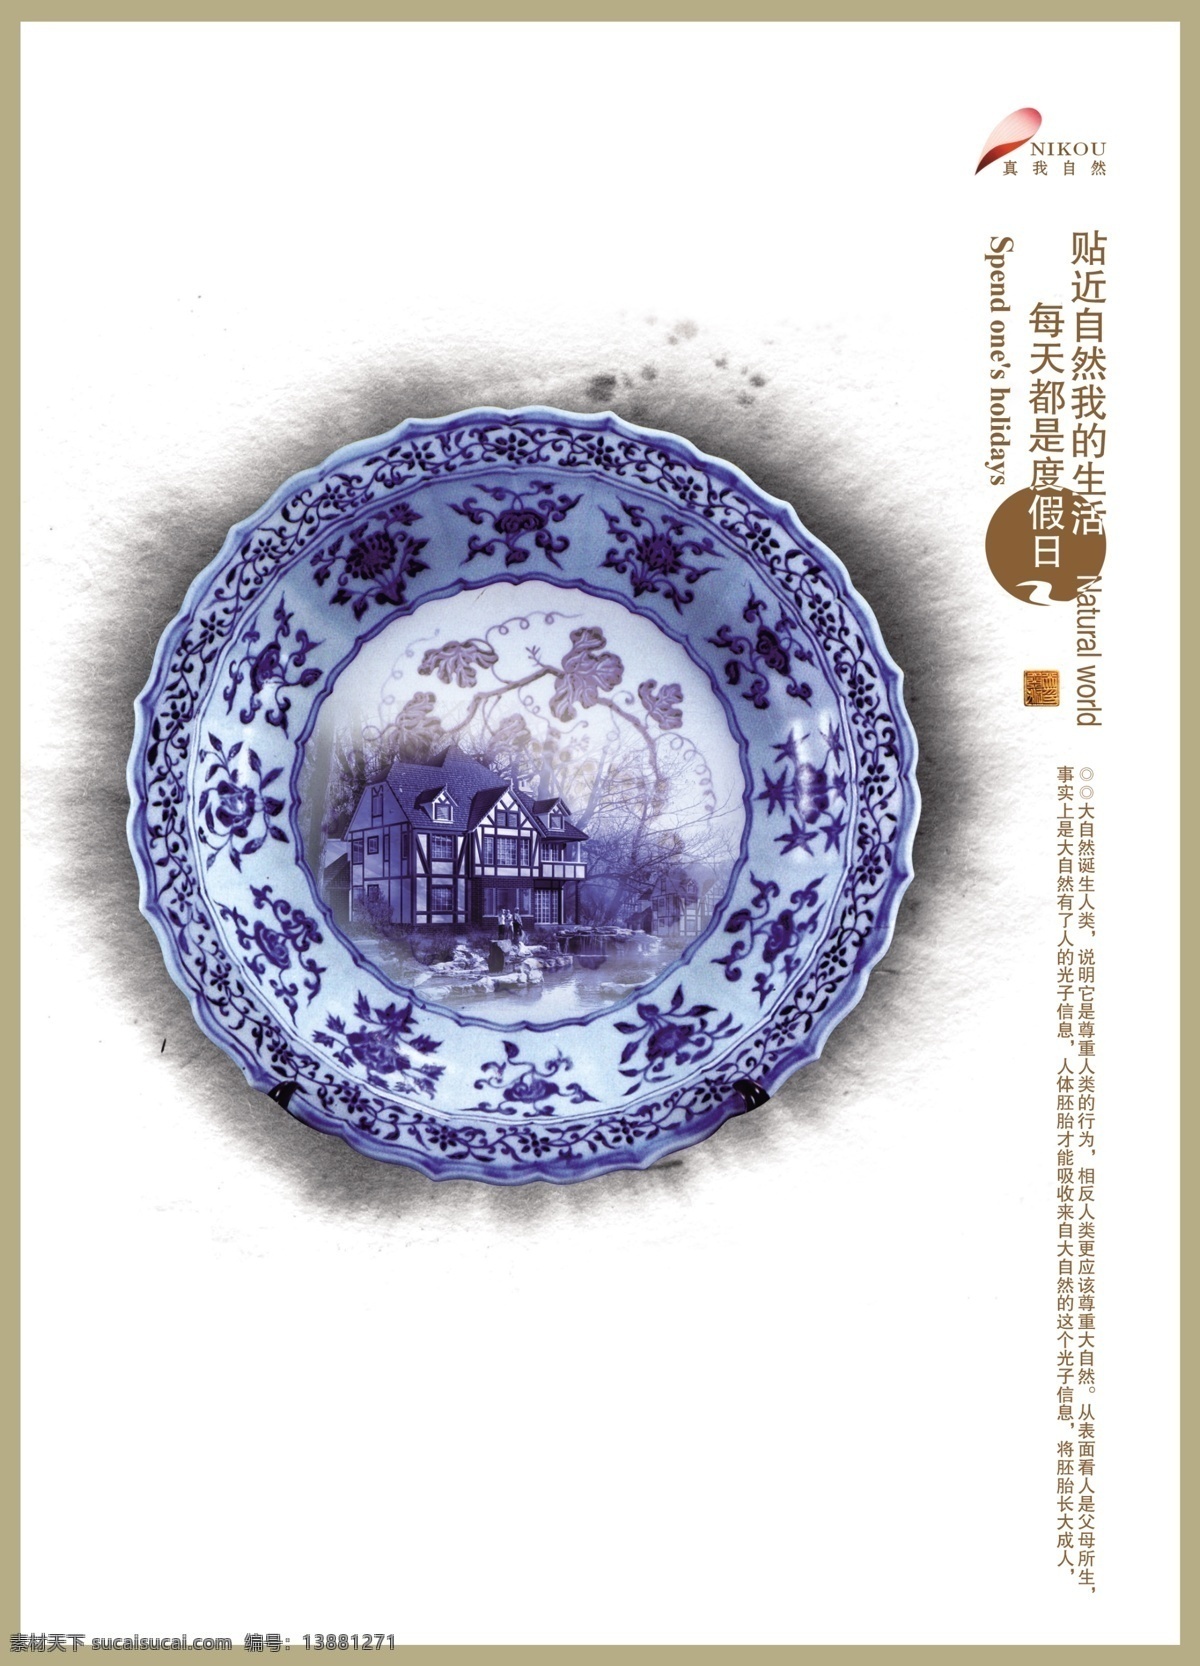 青花瓷 厨具 宣传 元素 中国风 水墨 墨晕 碗 碟子